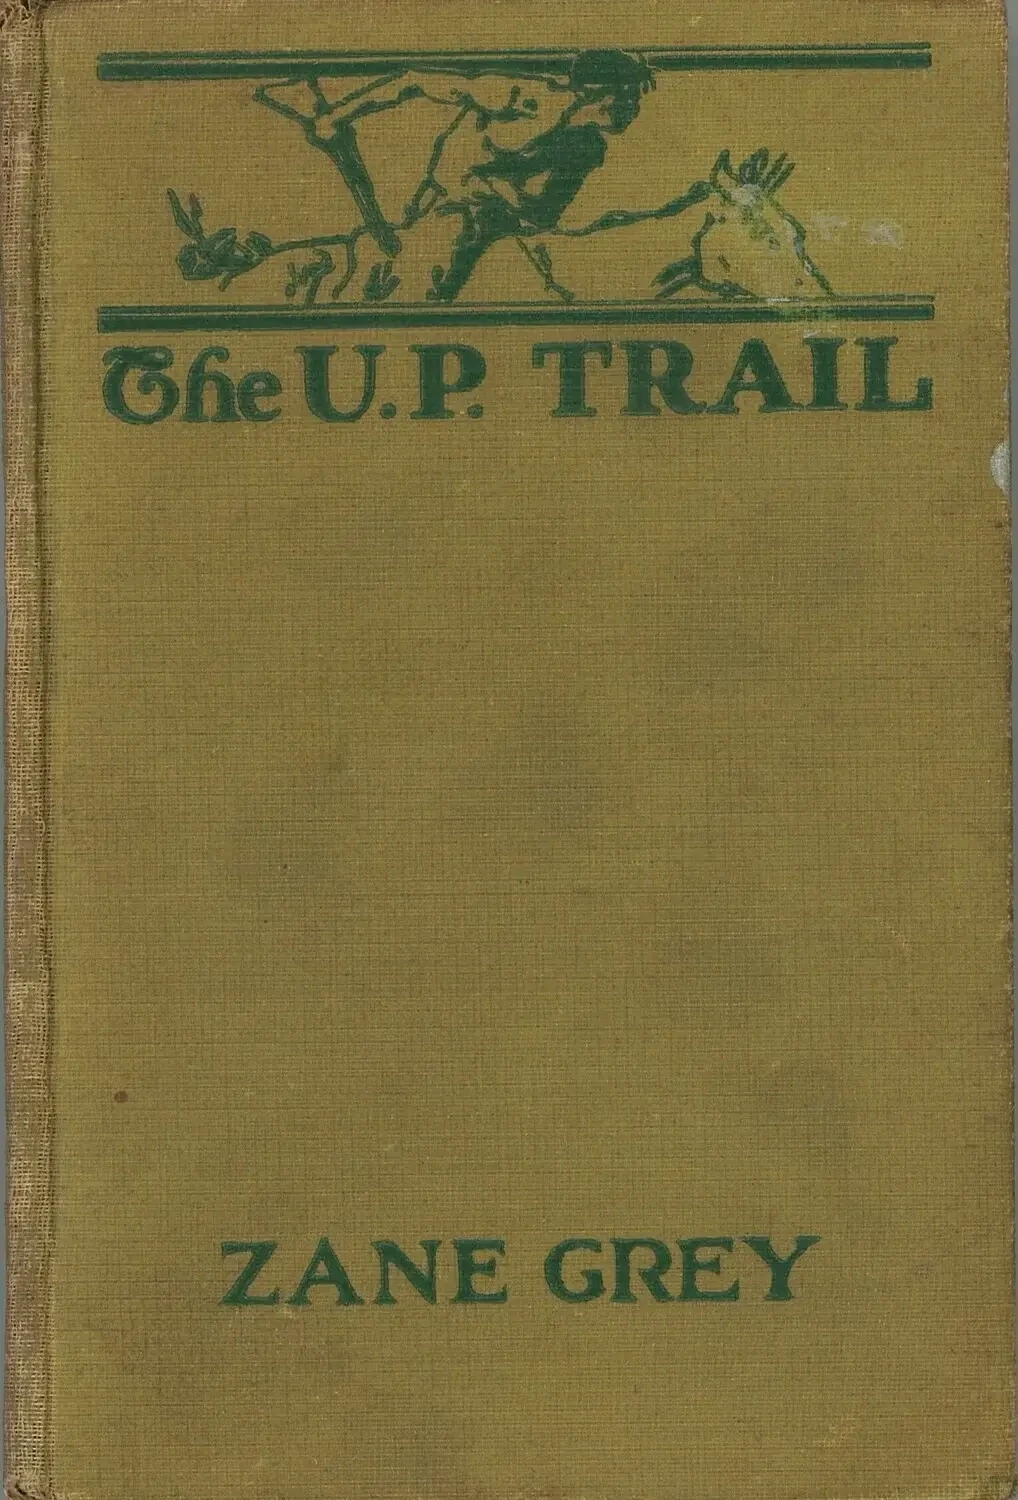 The U.P. Trail by Zane Grey